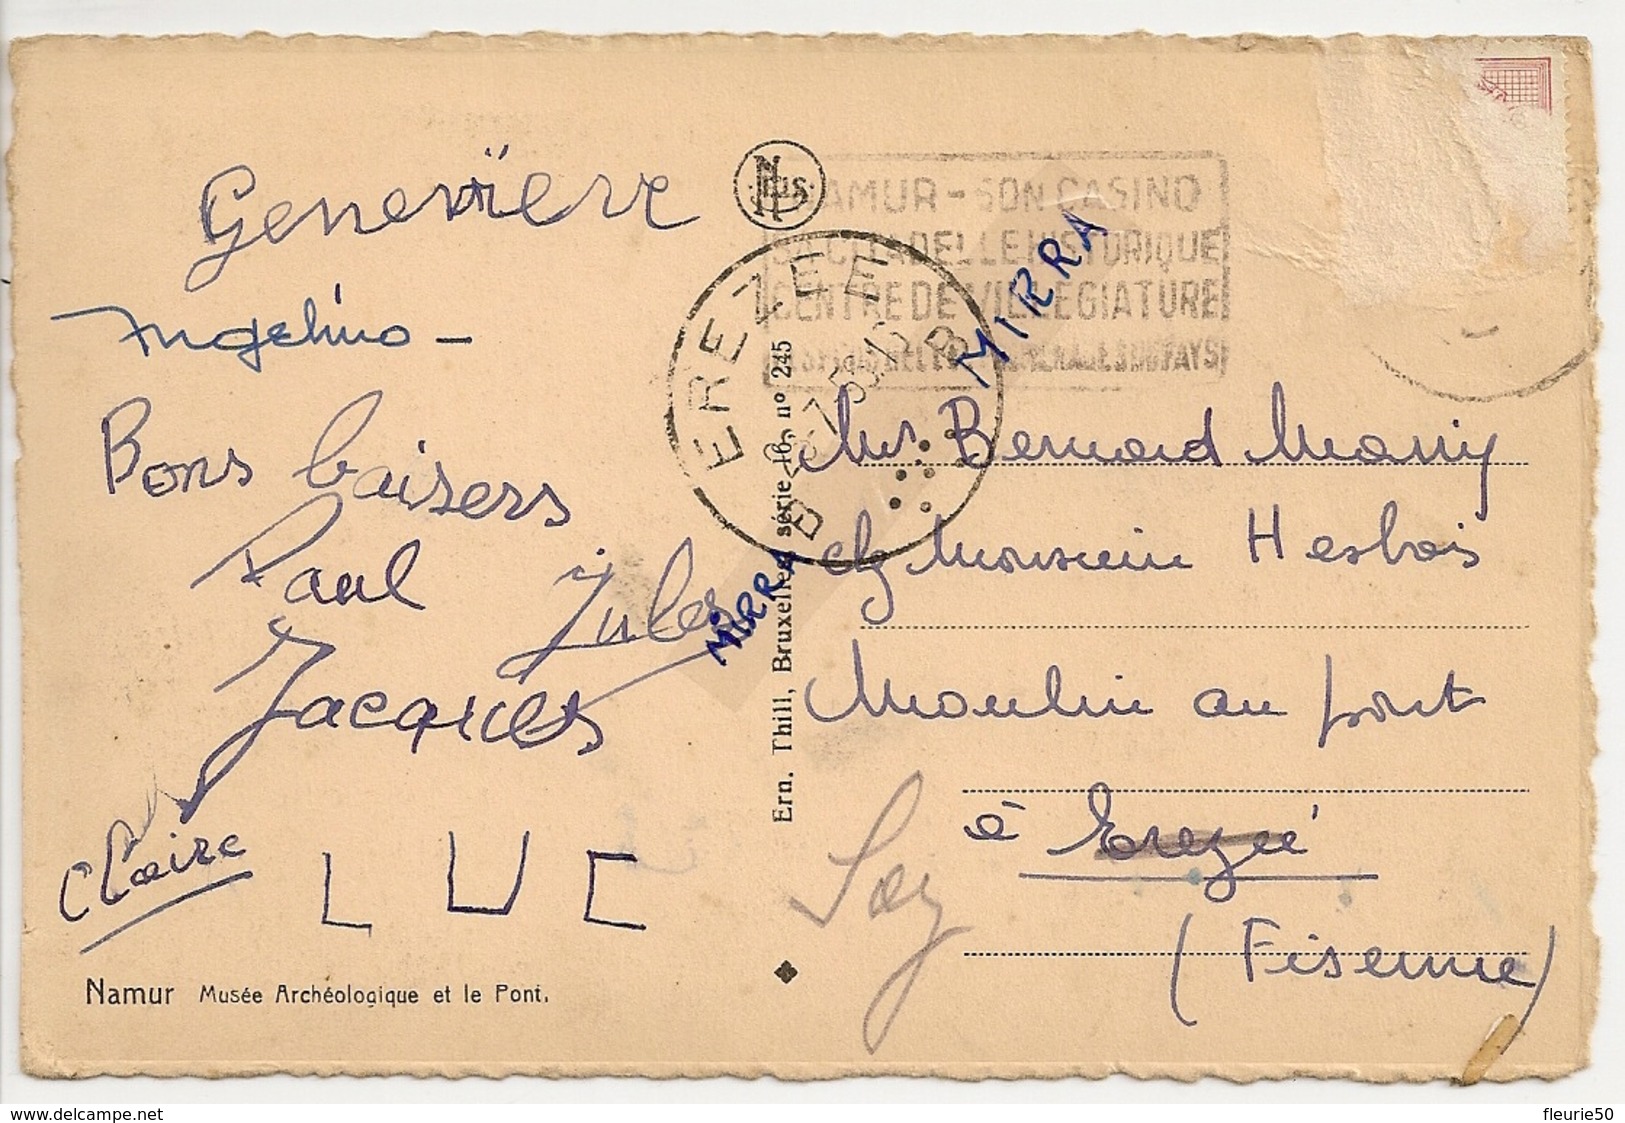 NAMUR, LOT de 8 cartes postales: Casino, Citadelle, La Sambre, Hôtel du château, Grand place, Musée,Panorama, R. mathieu